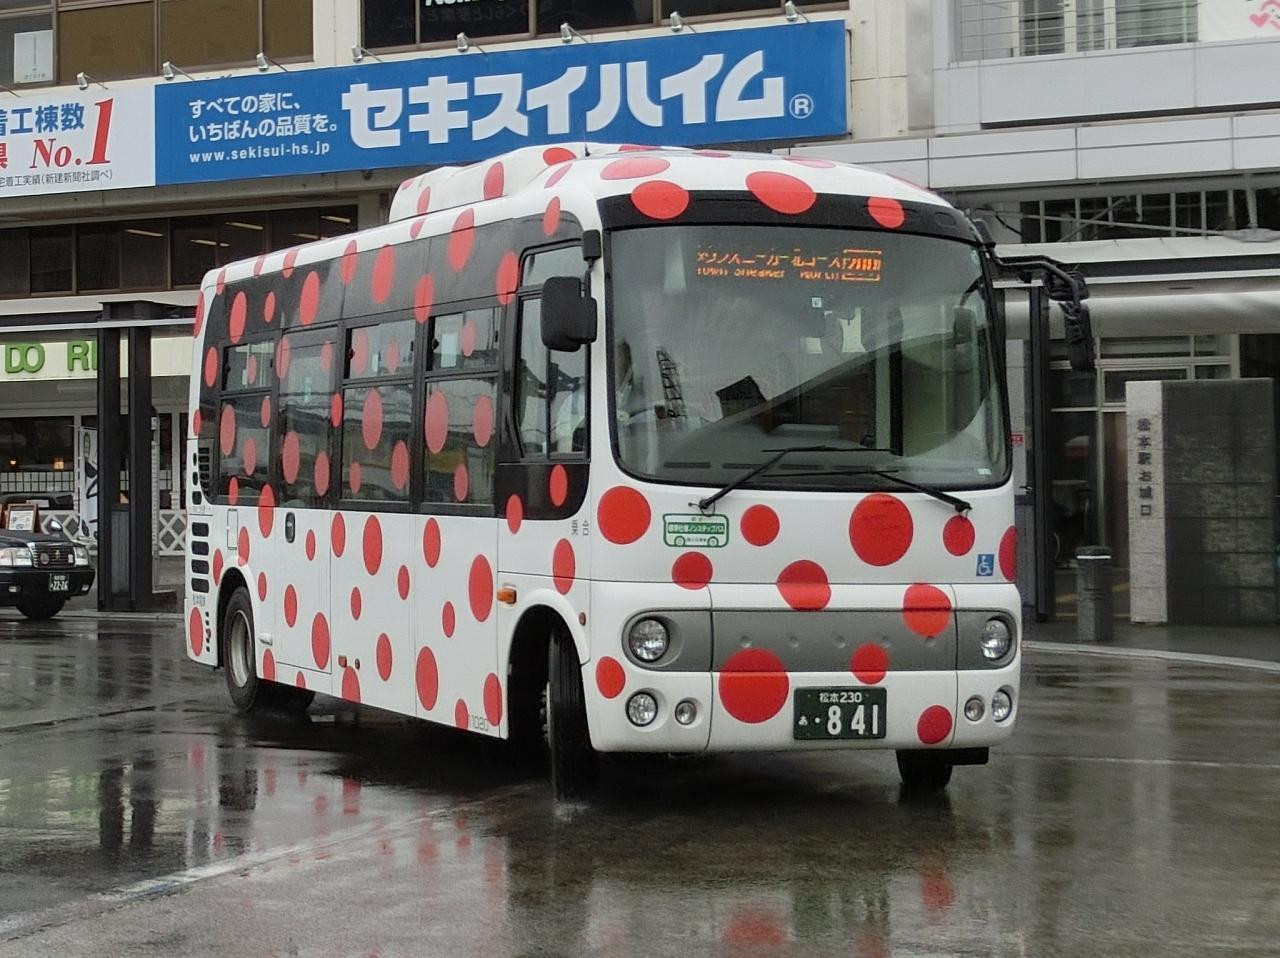 松本での移動は「徒歩」と「バス」を組み合わせて1448076